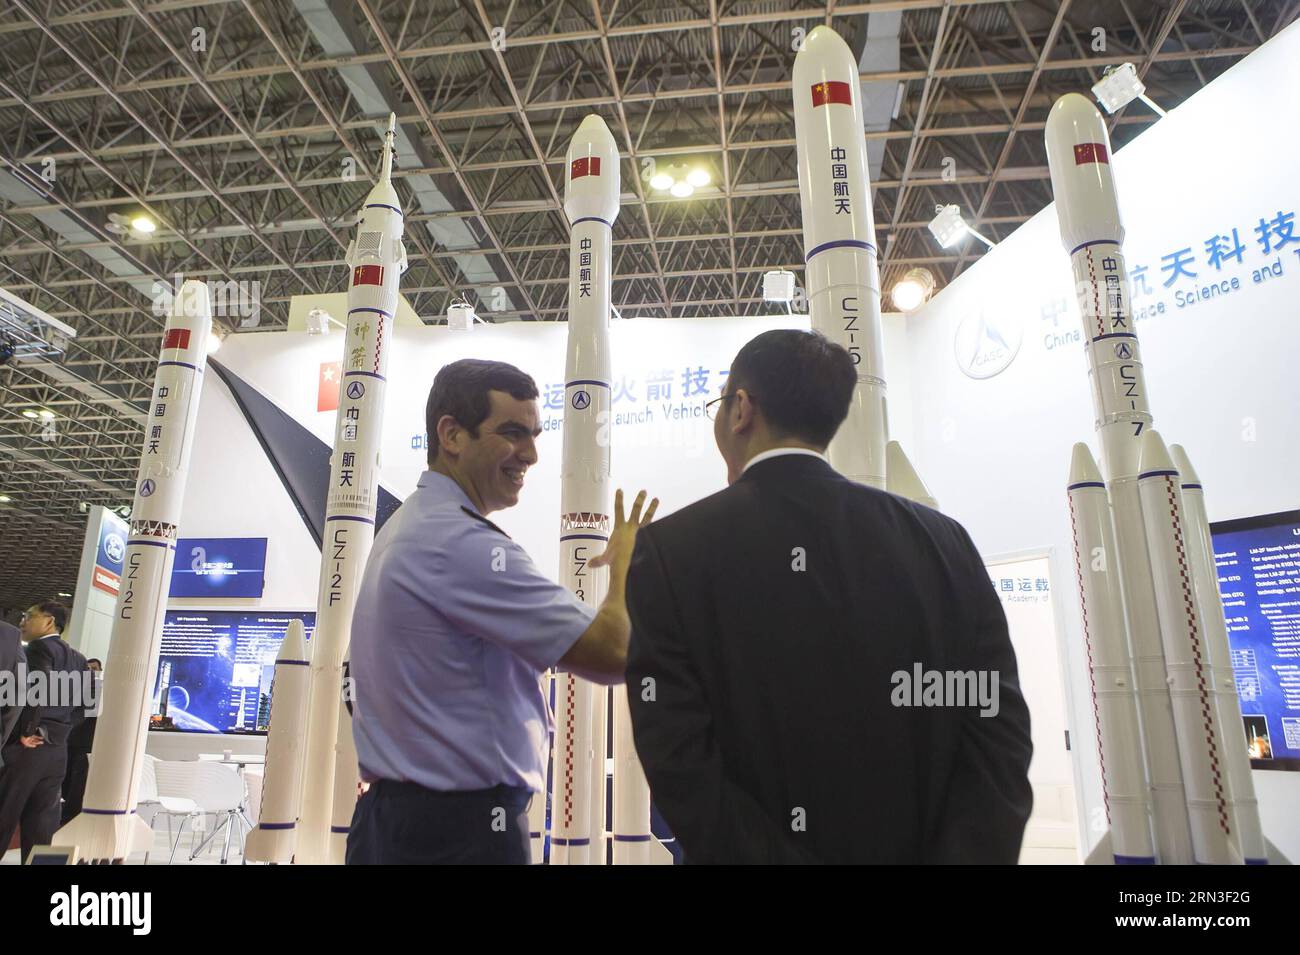 RIO DE JANEIRO, 14 aprile 2015 - Un visitatore (L) parla con un espositore della China Academy of Launch Vehicle Technology di fronte ai modelli di razzo Changzheng (CZ) esposti alla fiera internazionale LAAD (Latin America Aerospace and Defence) del 2015 a Rio de Janeiro, Brasile, 14 aprile 2015. La mostra LAAD di quattro giorni del 2015 è iniziata qui martedì. ) (Azp) BRASILE-RIO DE JANEIRO-LAAD MOSTRA XuxZijian PUBLICATIONxNOTxINxCHN Rio de Janeiro 14 aprile 2015 un visitatore l parla con l'espositore della China Academy of Launch Vehicle Technology di fronte alla mostra Changzheng CZ Rocket Mo Foto Stock